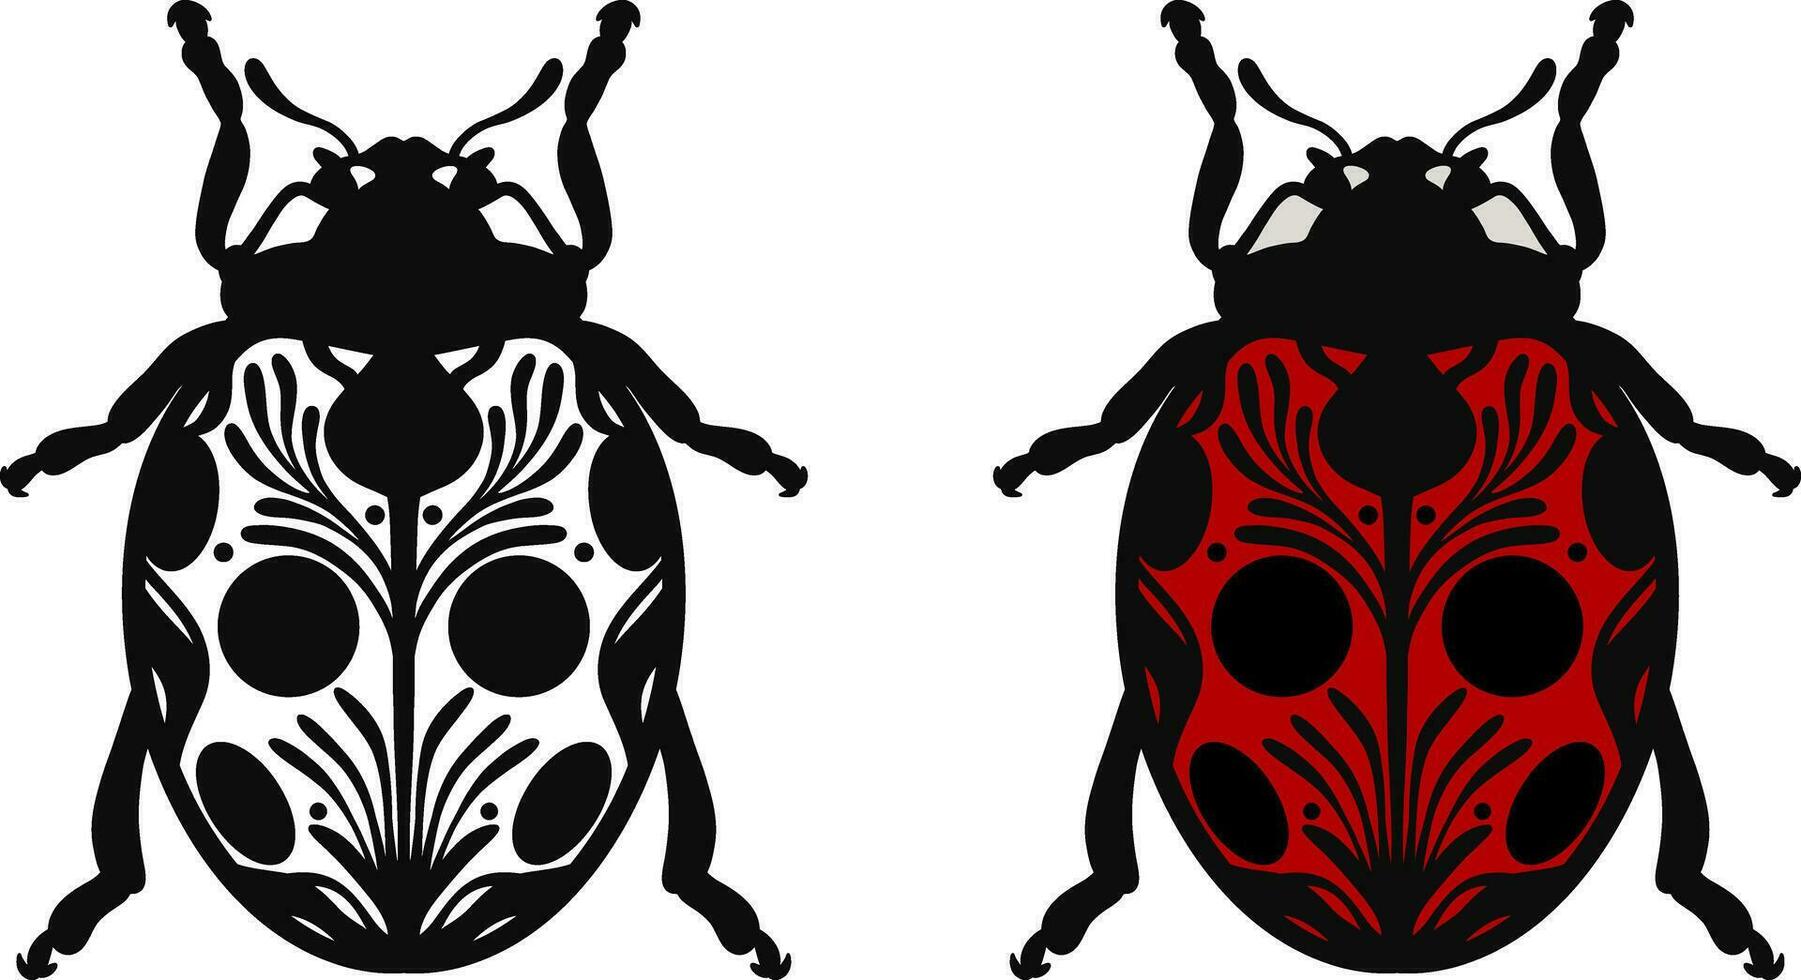 mariquita ilustración vector colocar, mano dibujado gente inspirado decorado escarabajo con puntos, rojo y negro línea Arte error diseño.